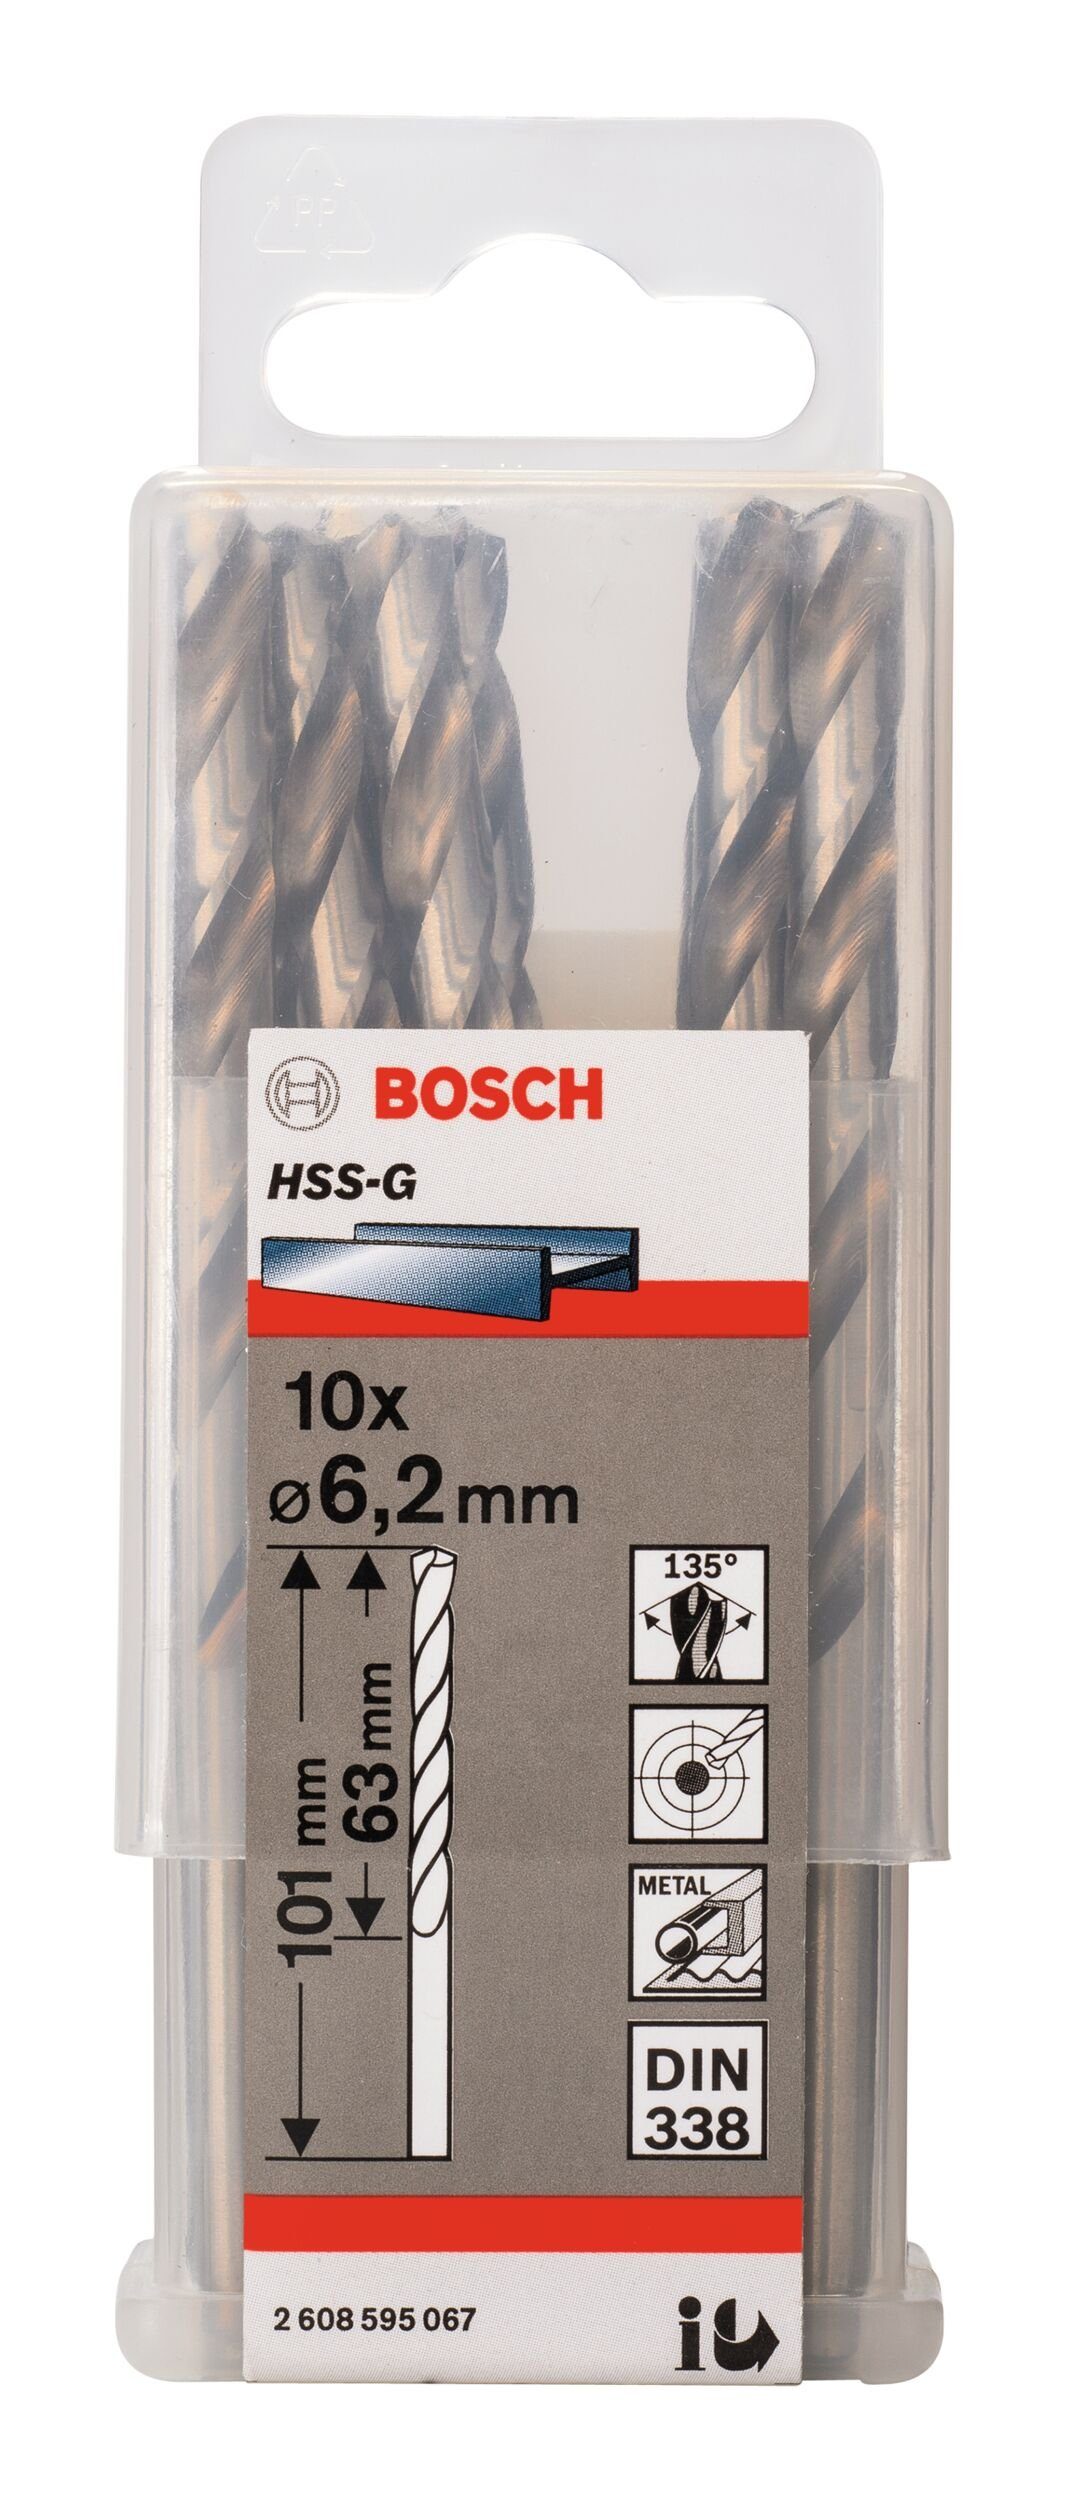 (DIN x Metallbohrer, 6,2 x Stück), - 101 BOSCH HSS-G 63 338) 10er-Pack - (10 mm